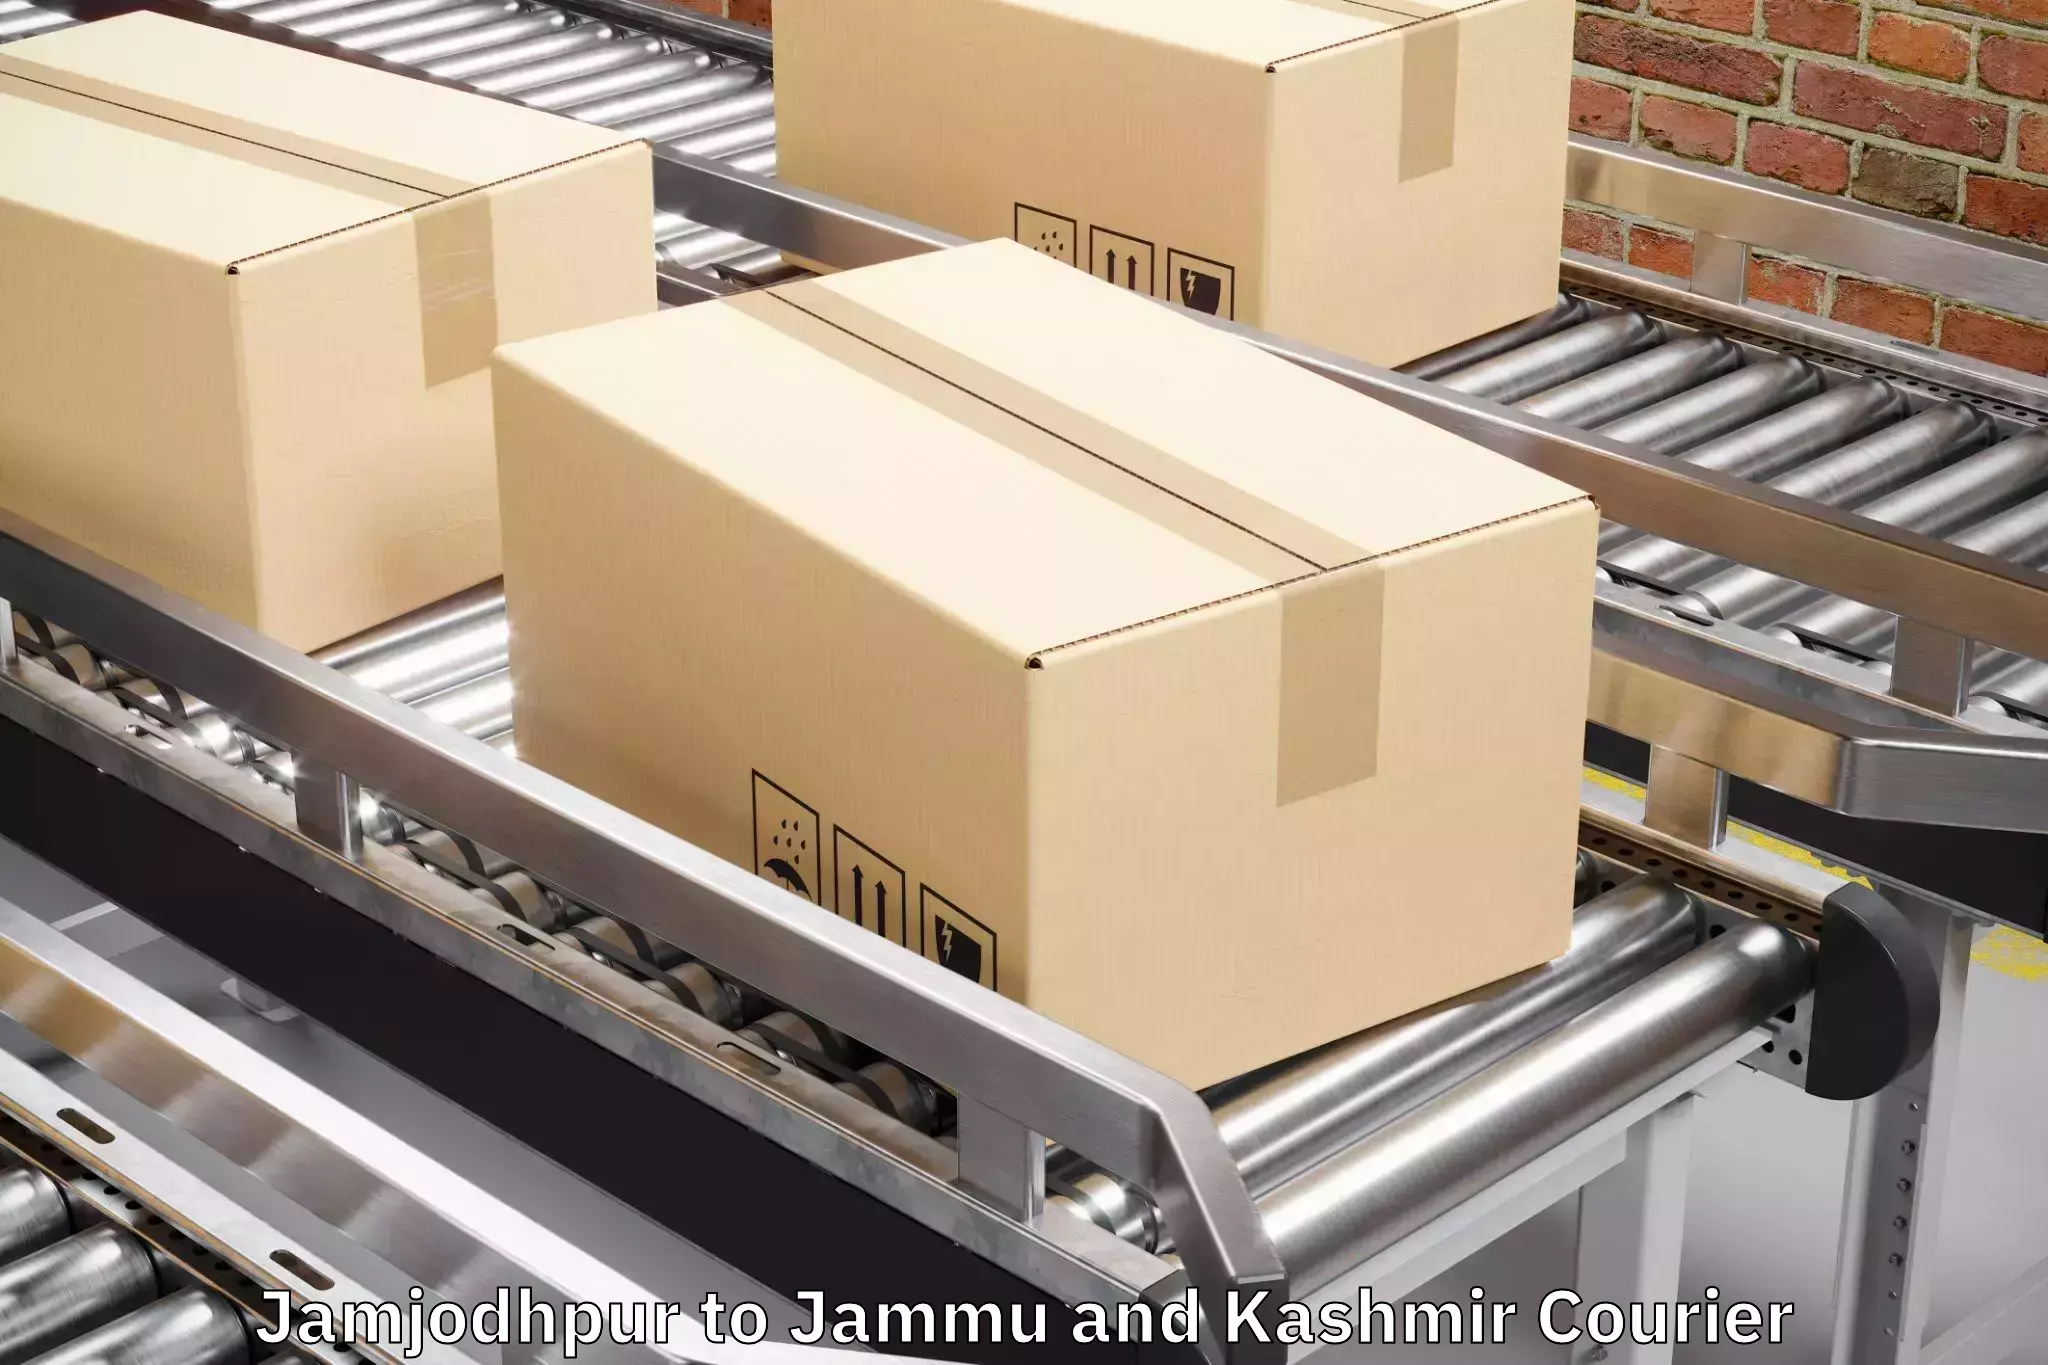 Luggage delivery optimization Jamjodhpur to Baramulla